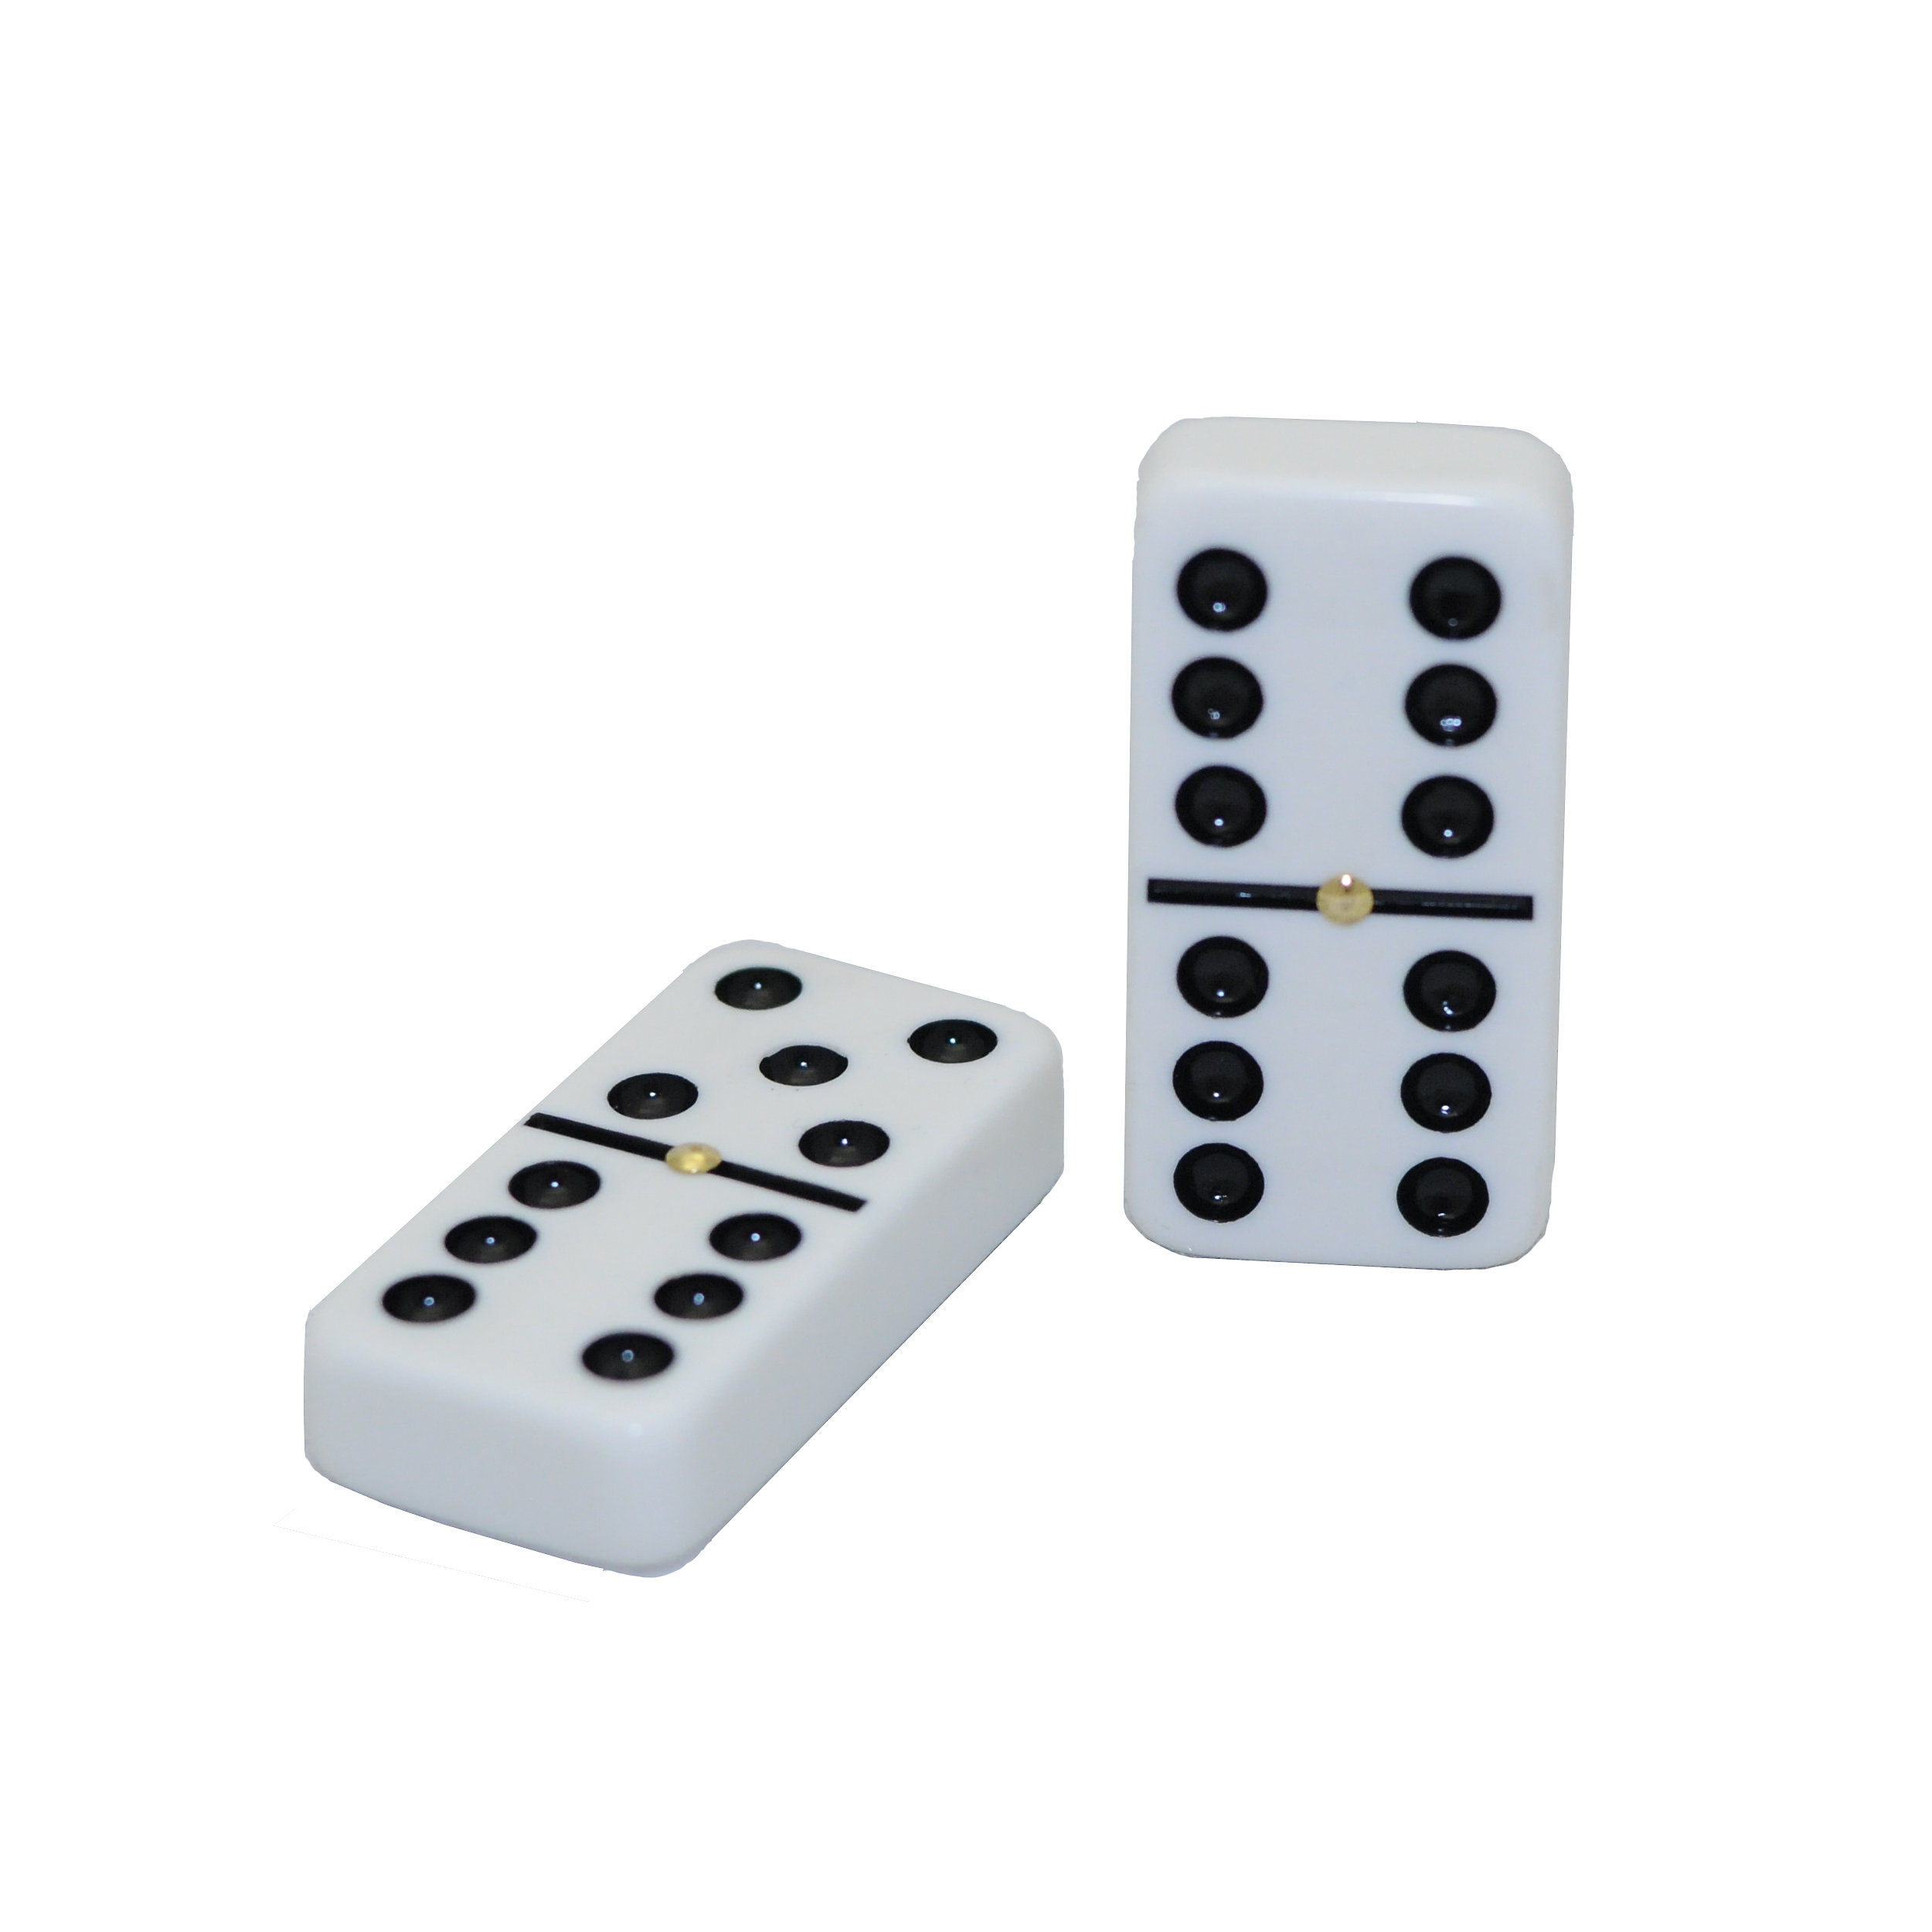 Domino 